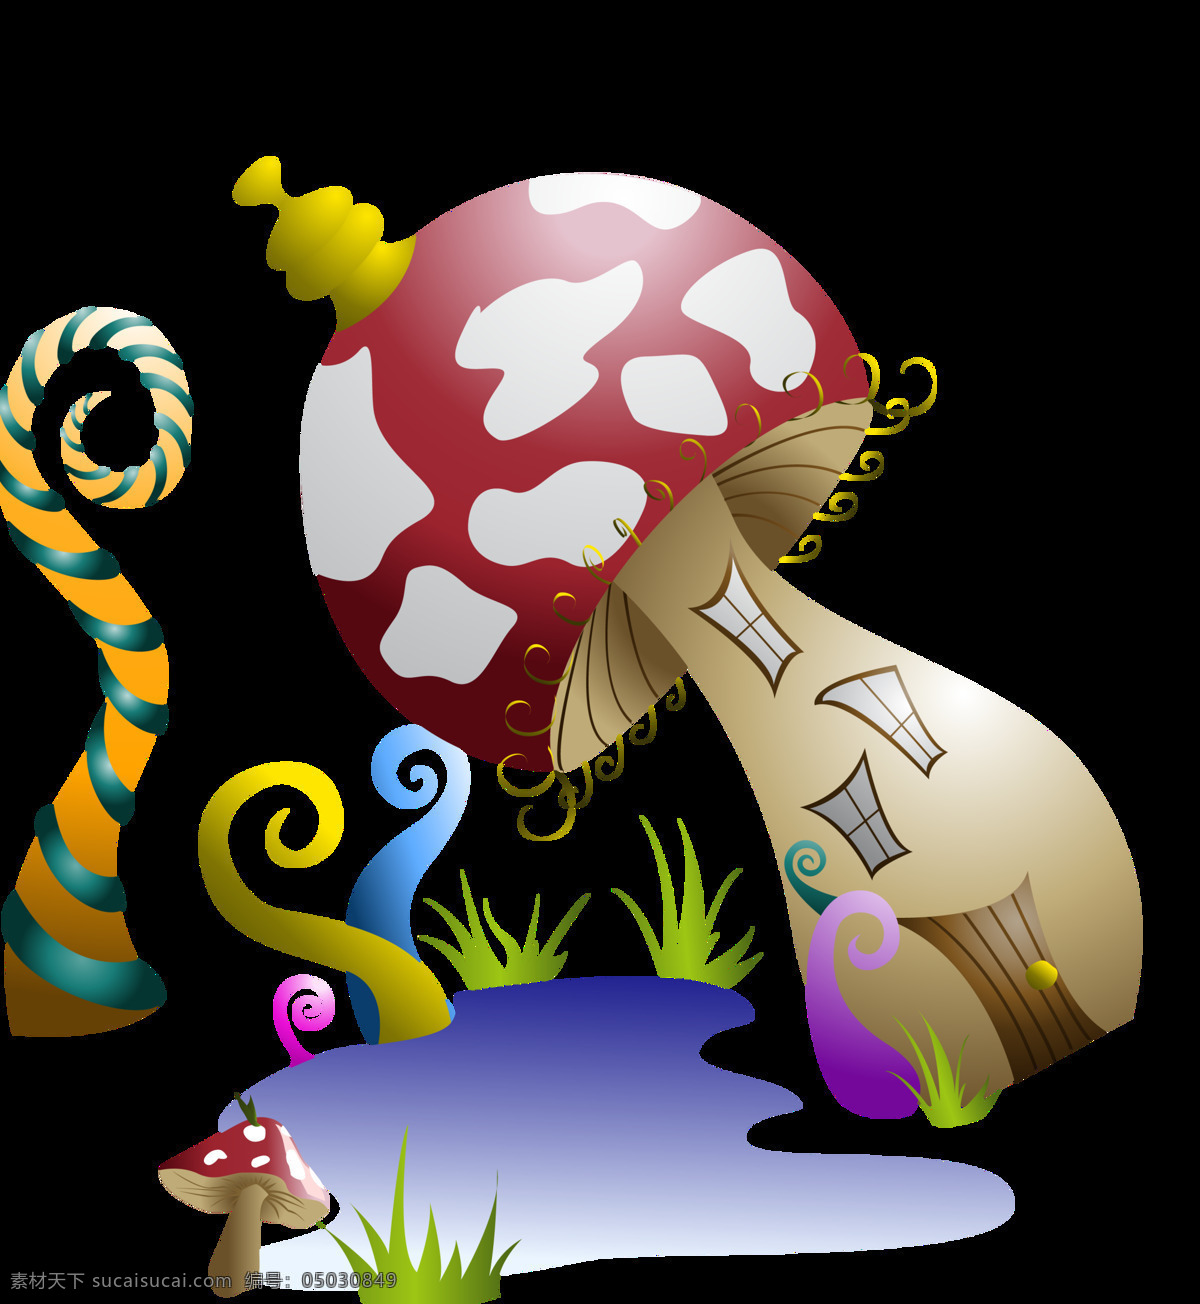 卡通 童话 蘑菇 城堡 图案 元素 蘑菇图案 设计图 设计元素 装饰元素